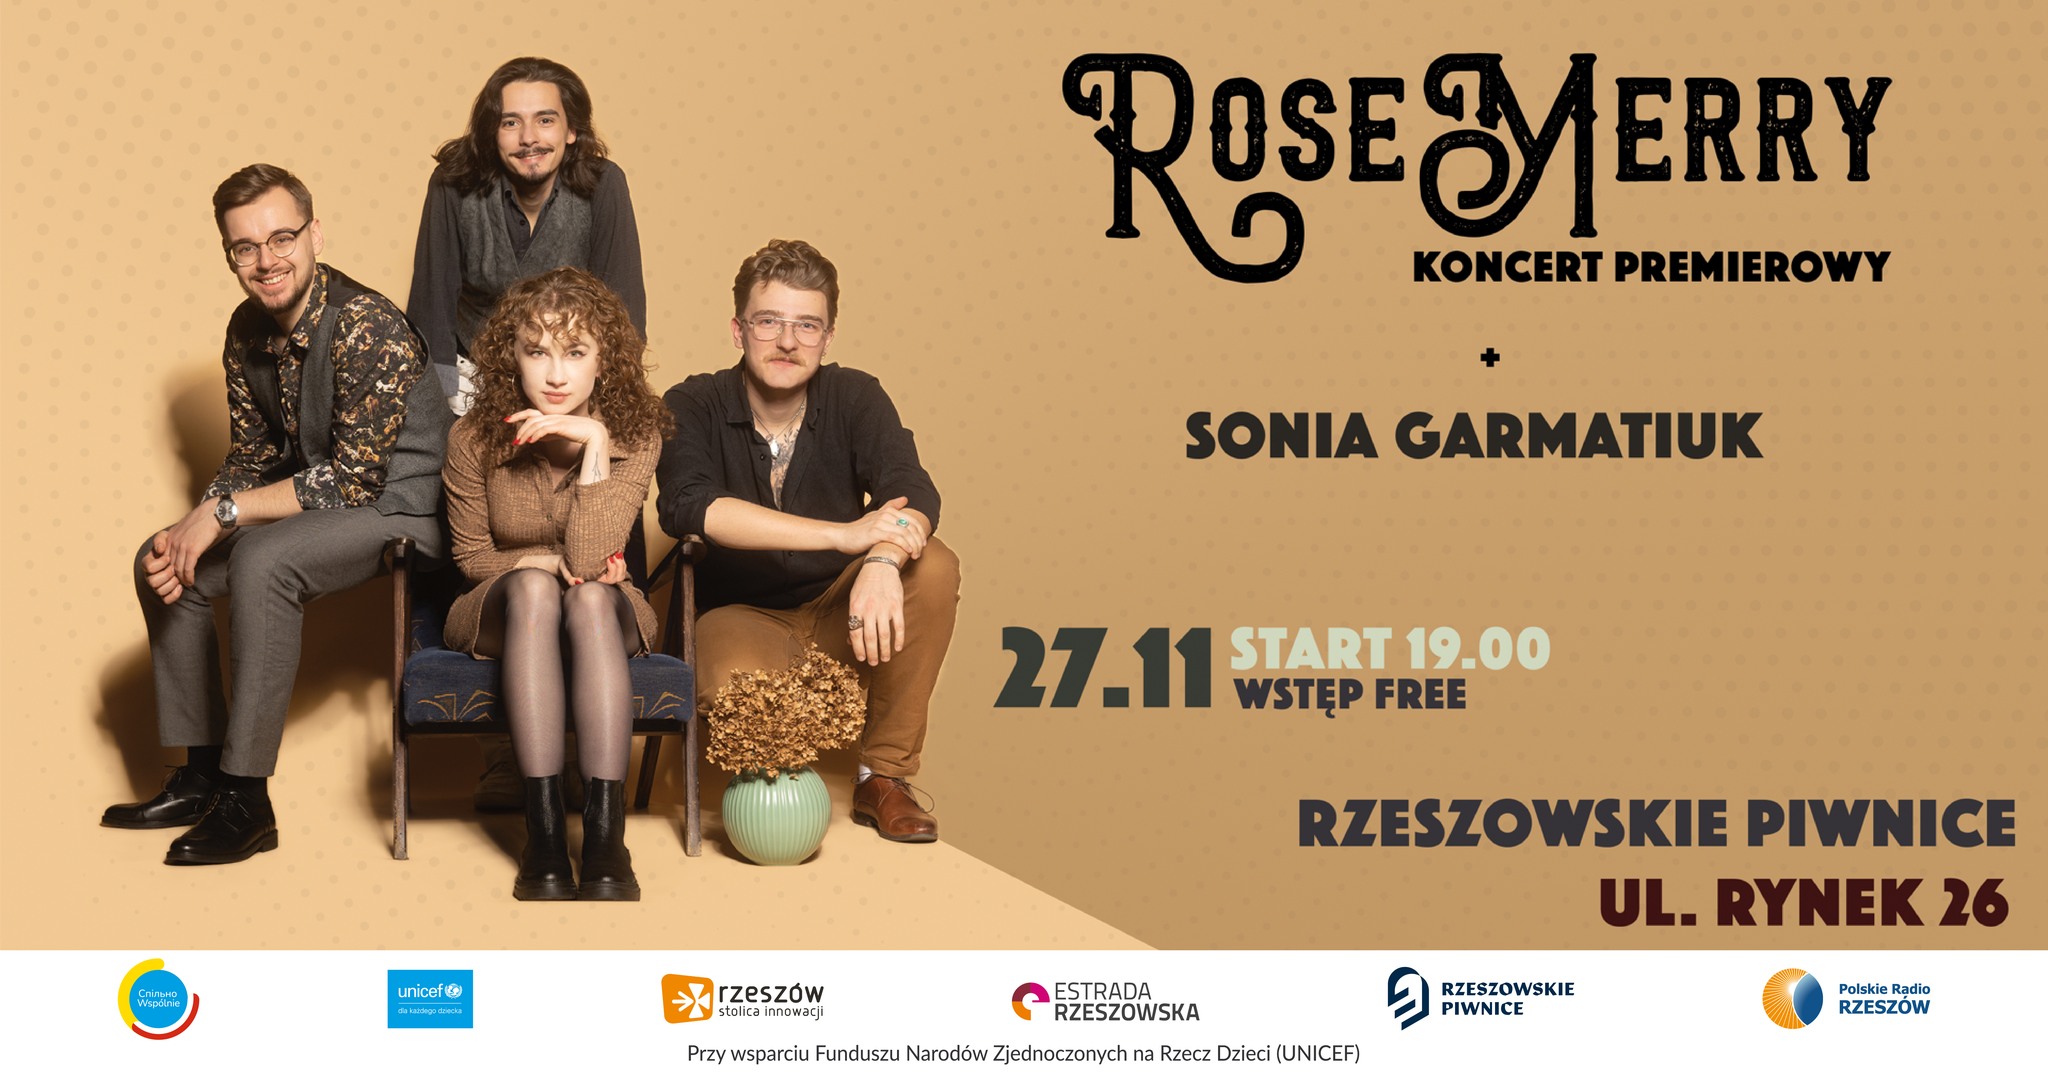 Koncert RoseMerry + Sonia Garmatiuk 